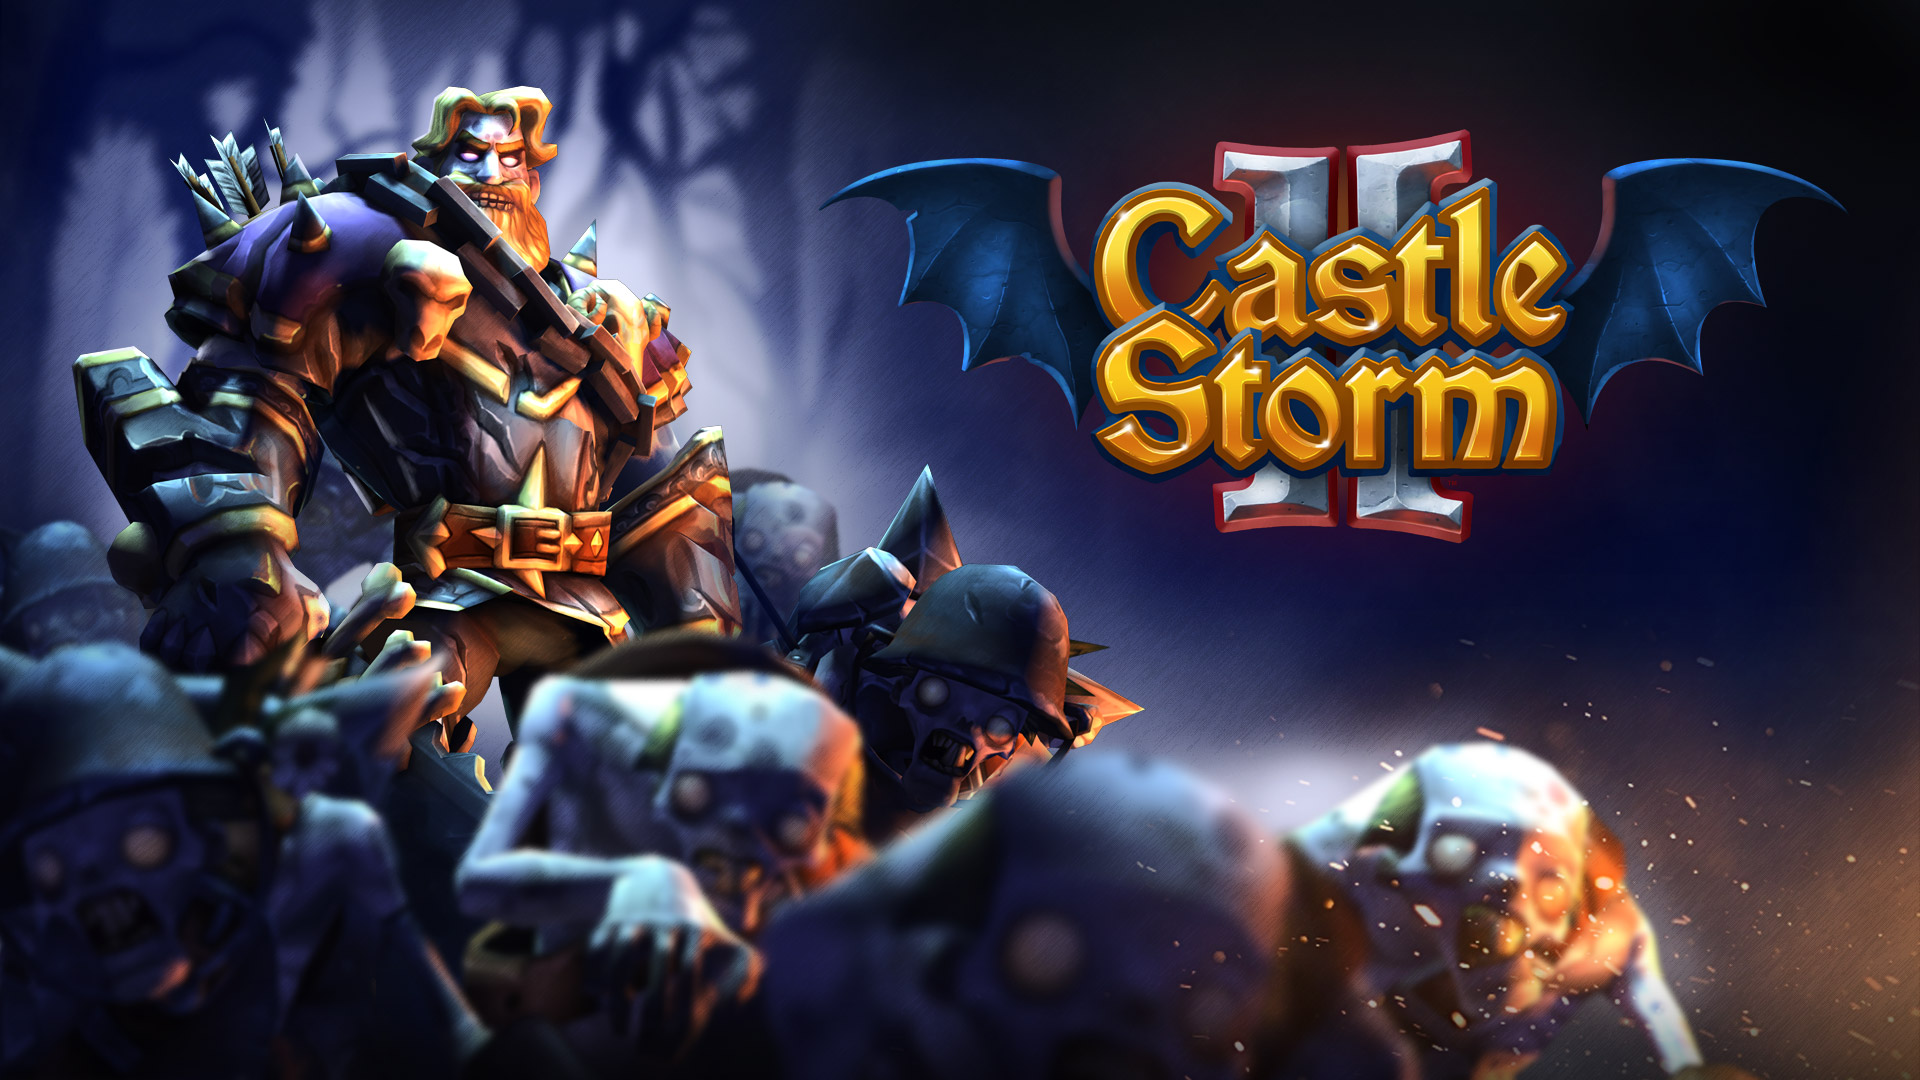 Castlestorm Ps3